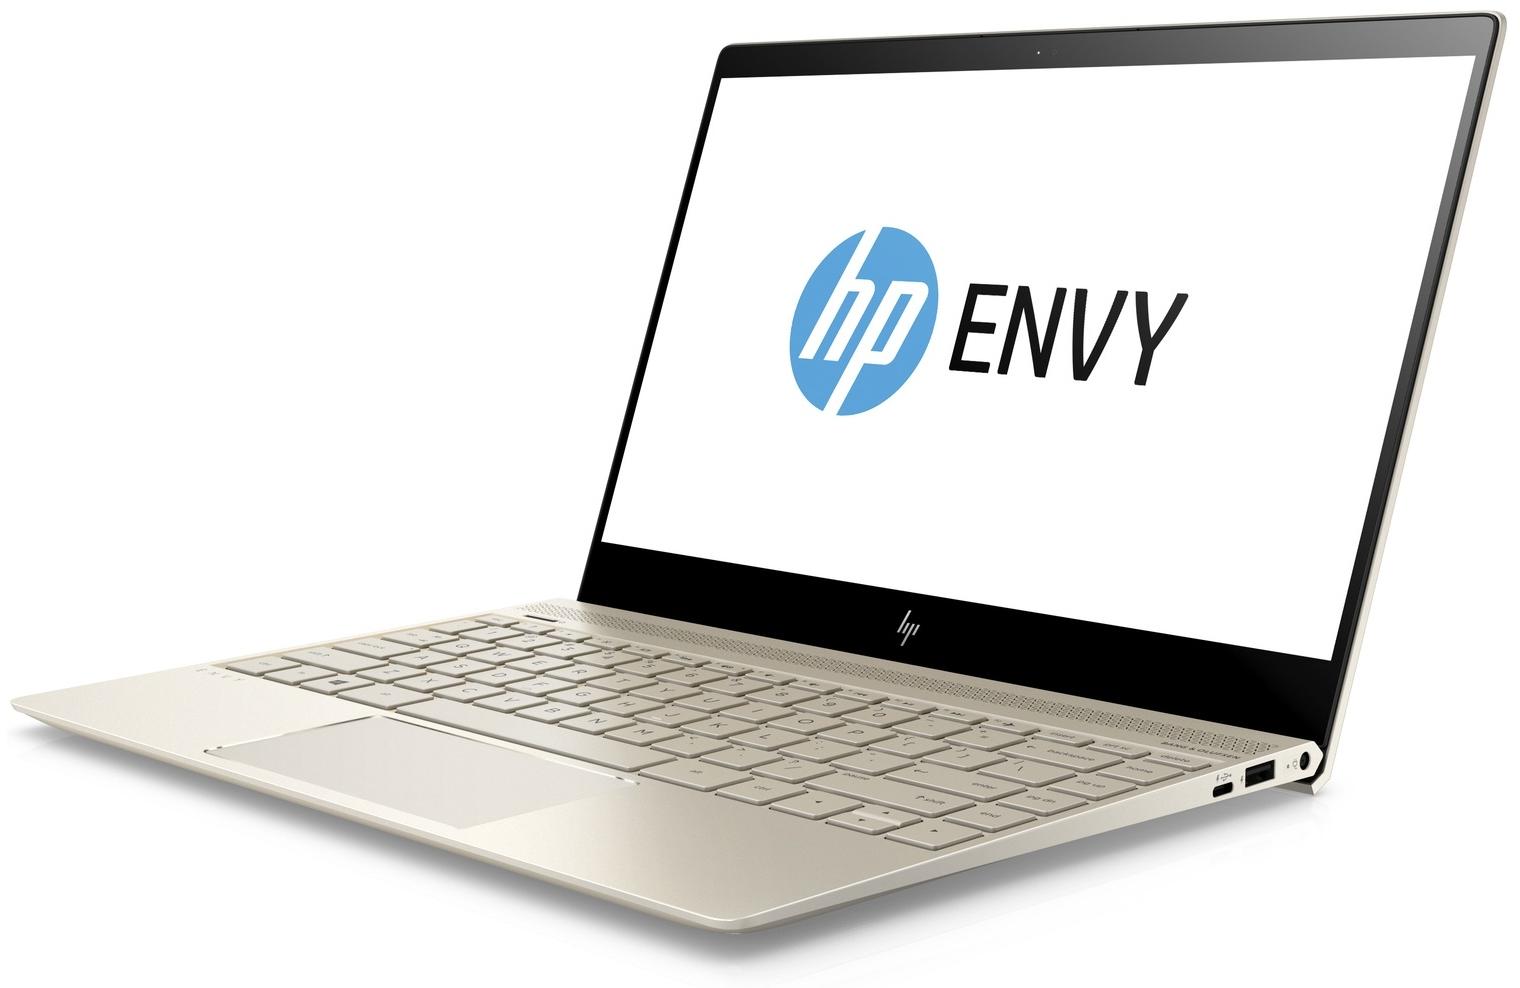  HP Envy 13-ad007ur 1WS53EA  #1